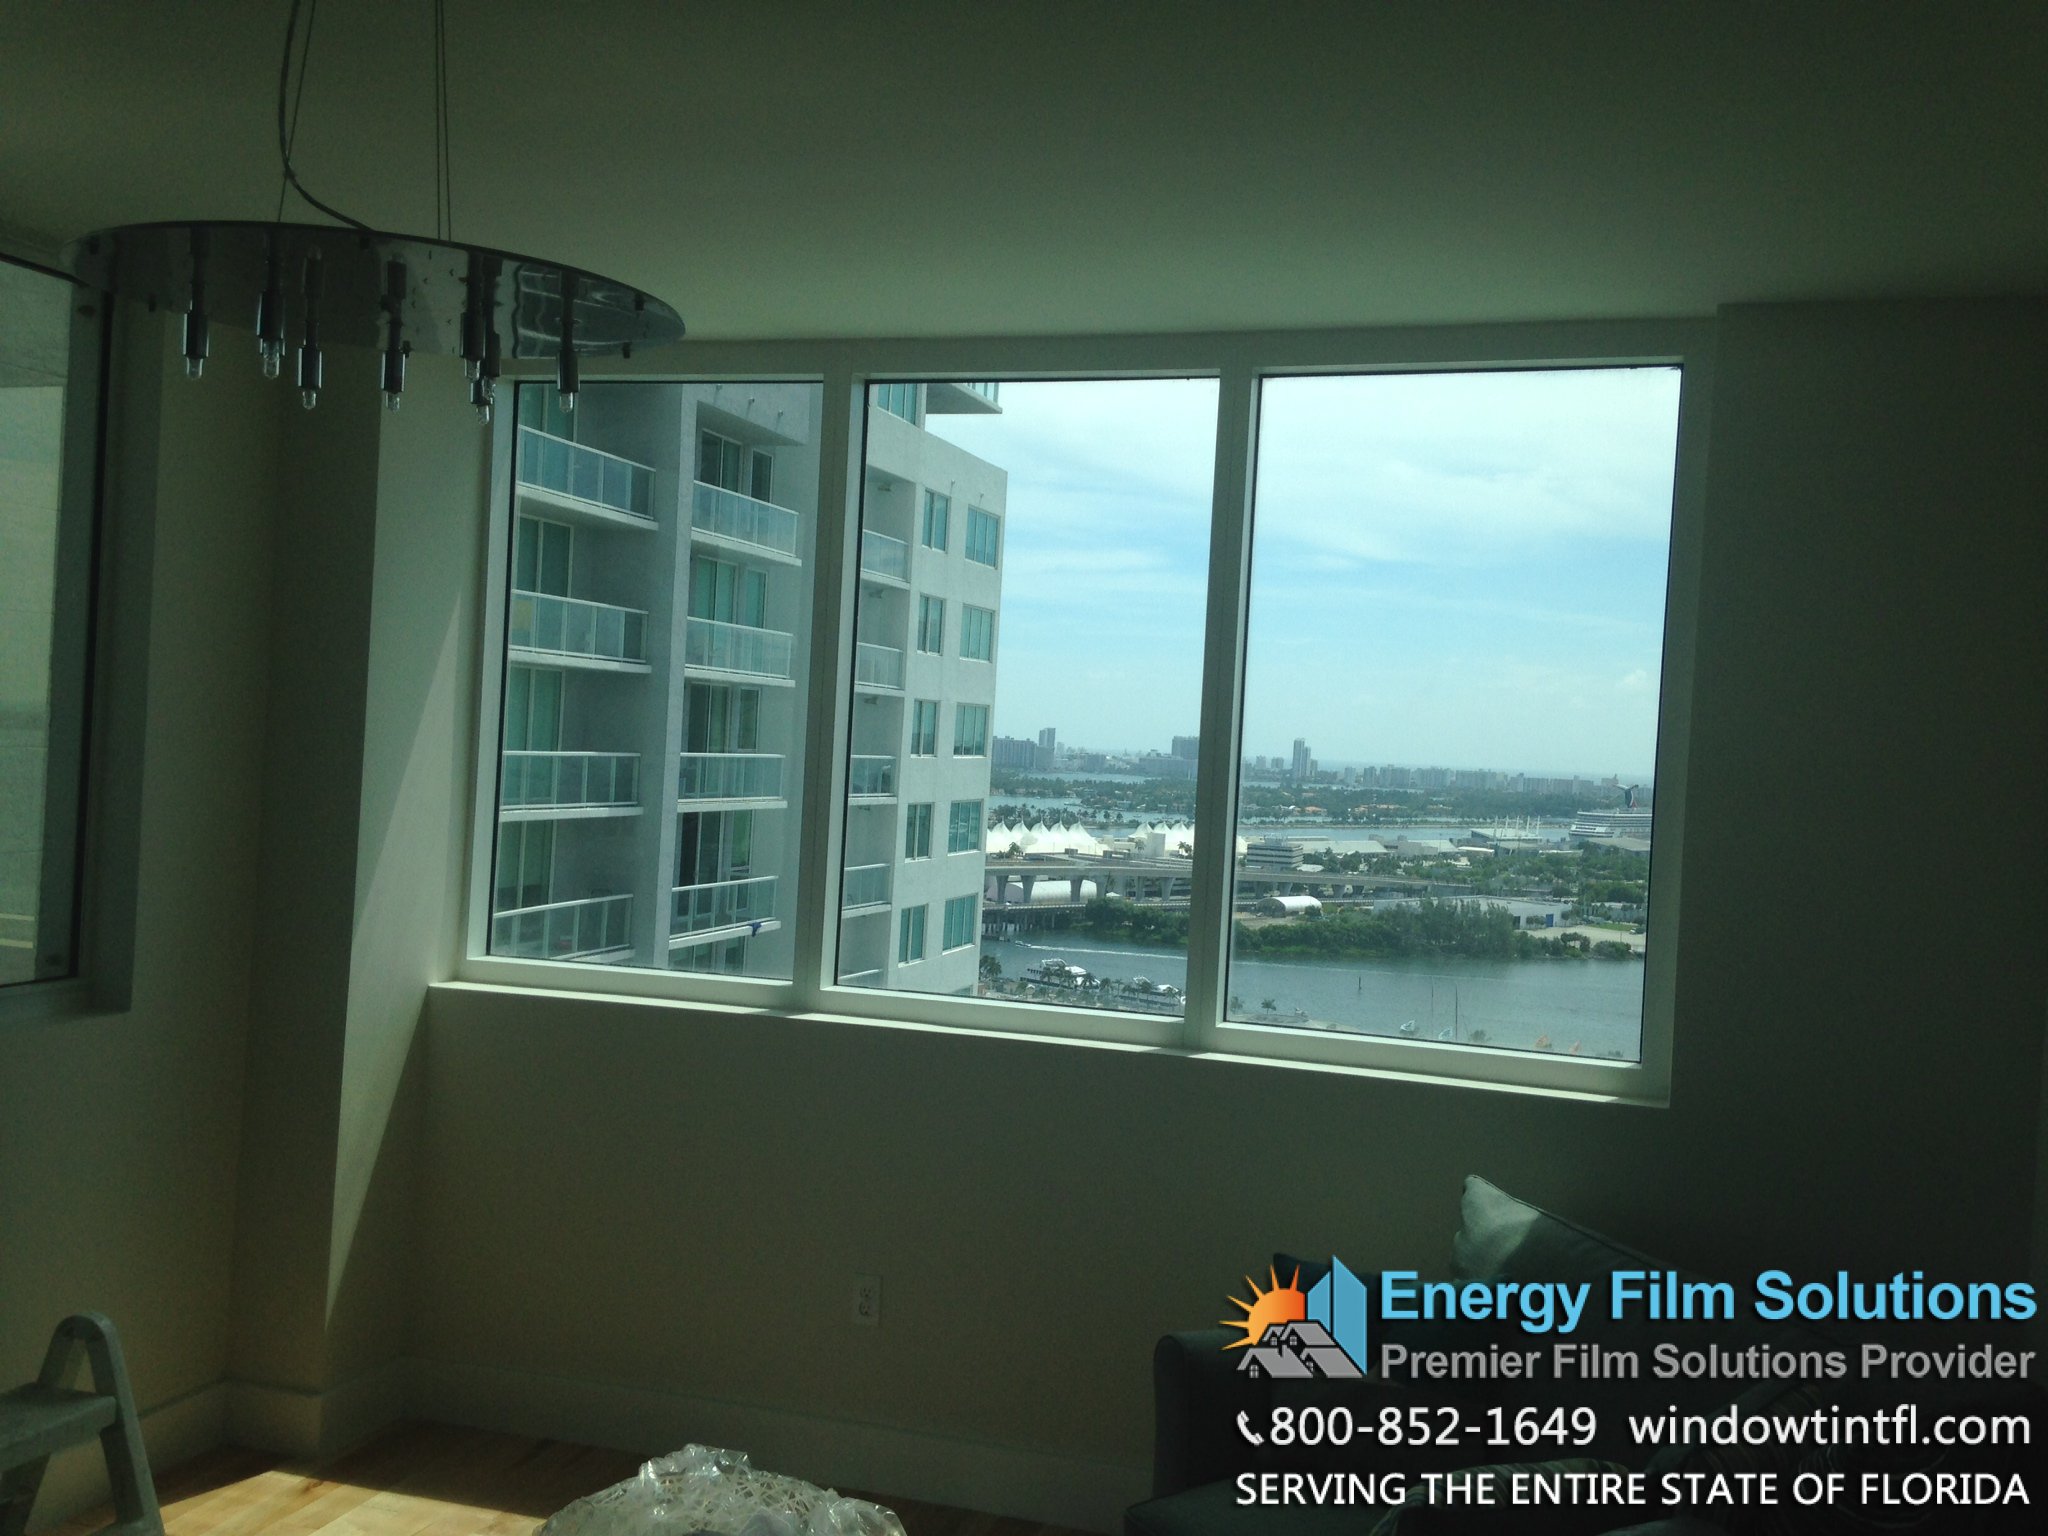 No home window film applied to Miami Condominium